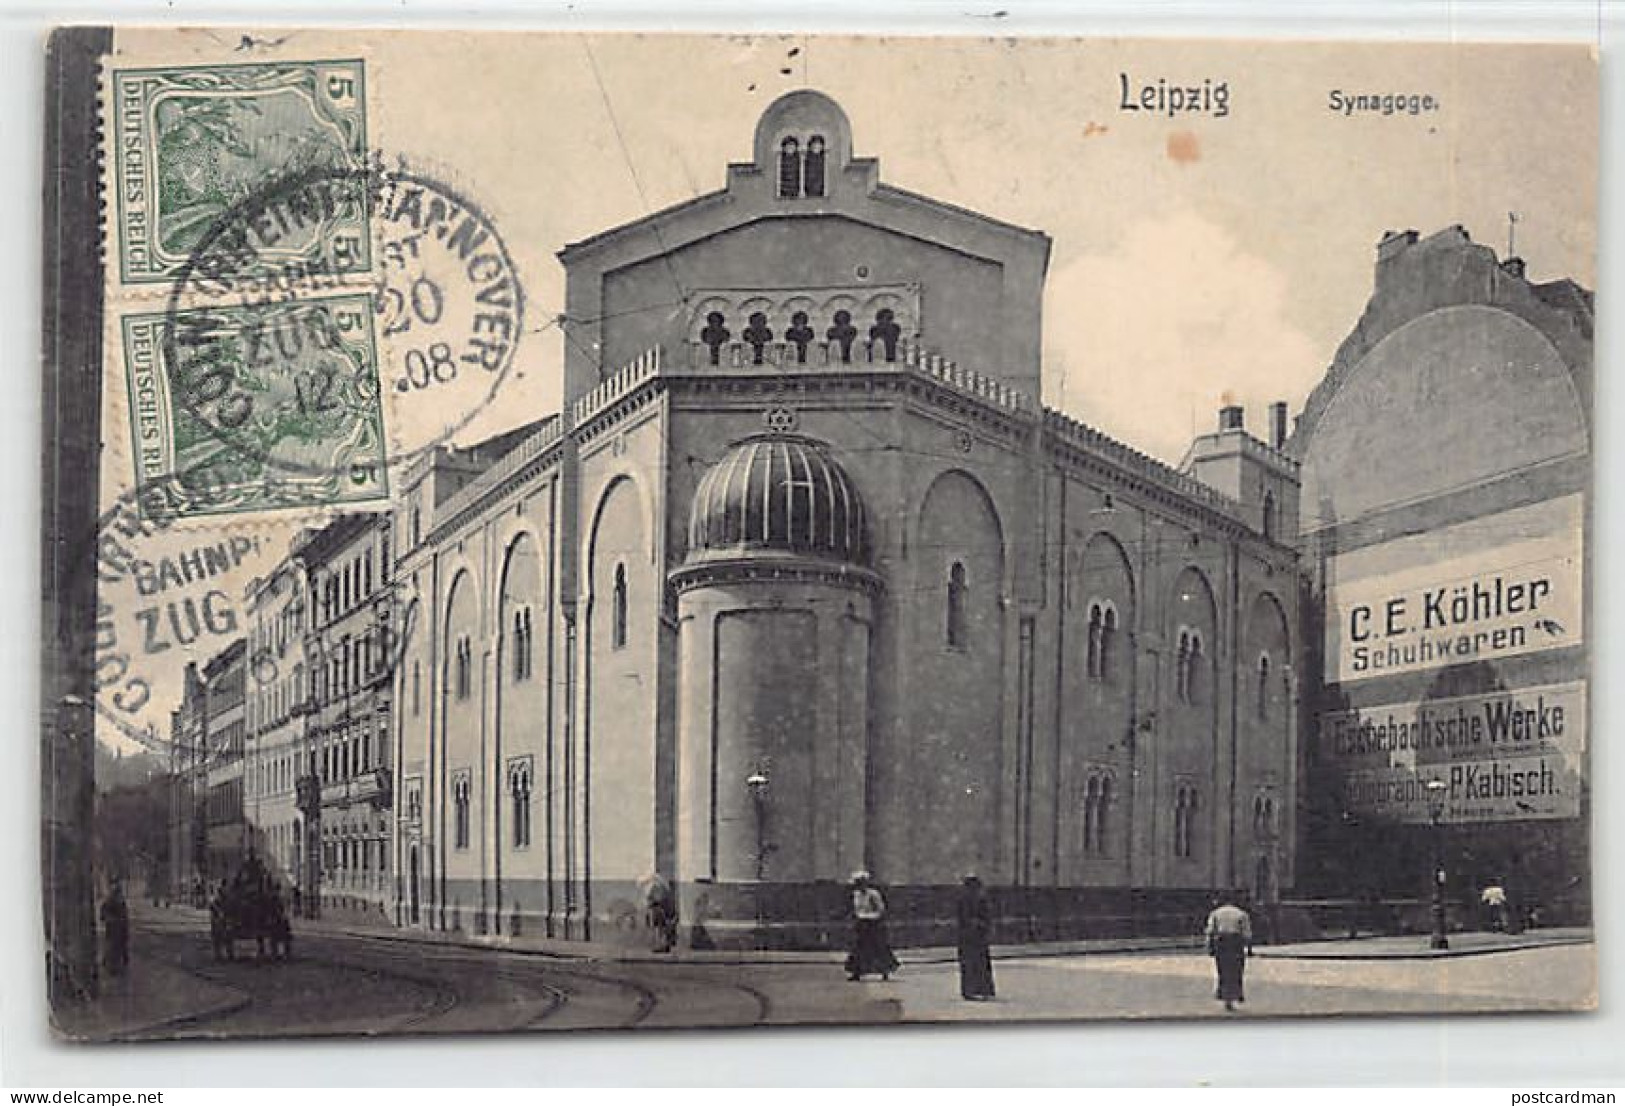 Judaica - GERMANY - Leipzig - The Synagogue - Publ. G. Friedrich  - Jewish